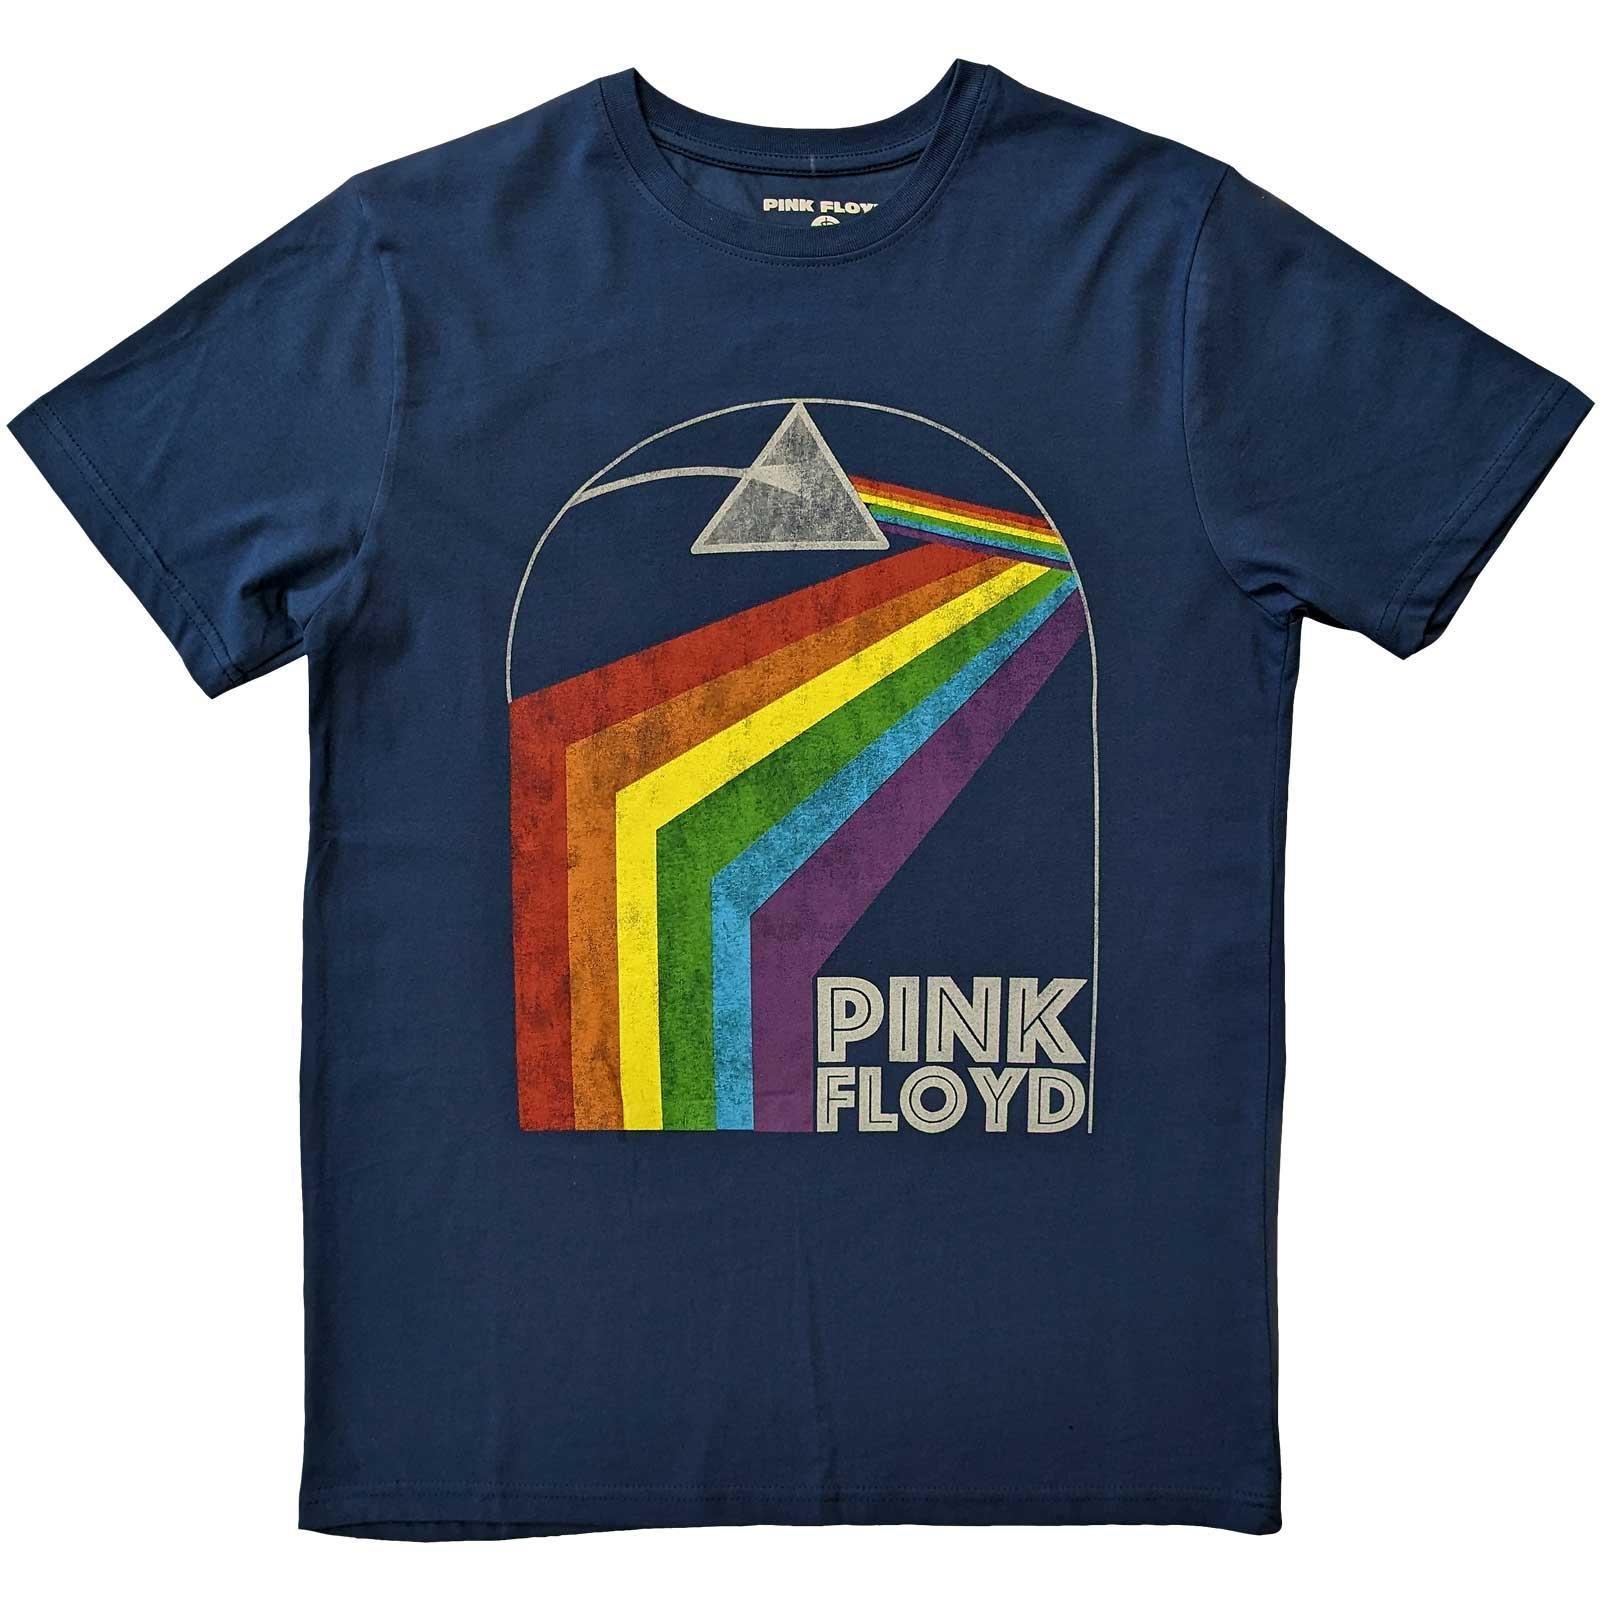 Pink Floyd  Tshirt PRISM ARCH 